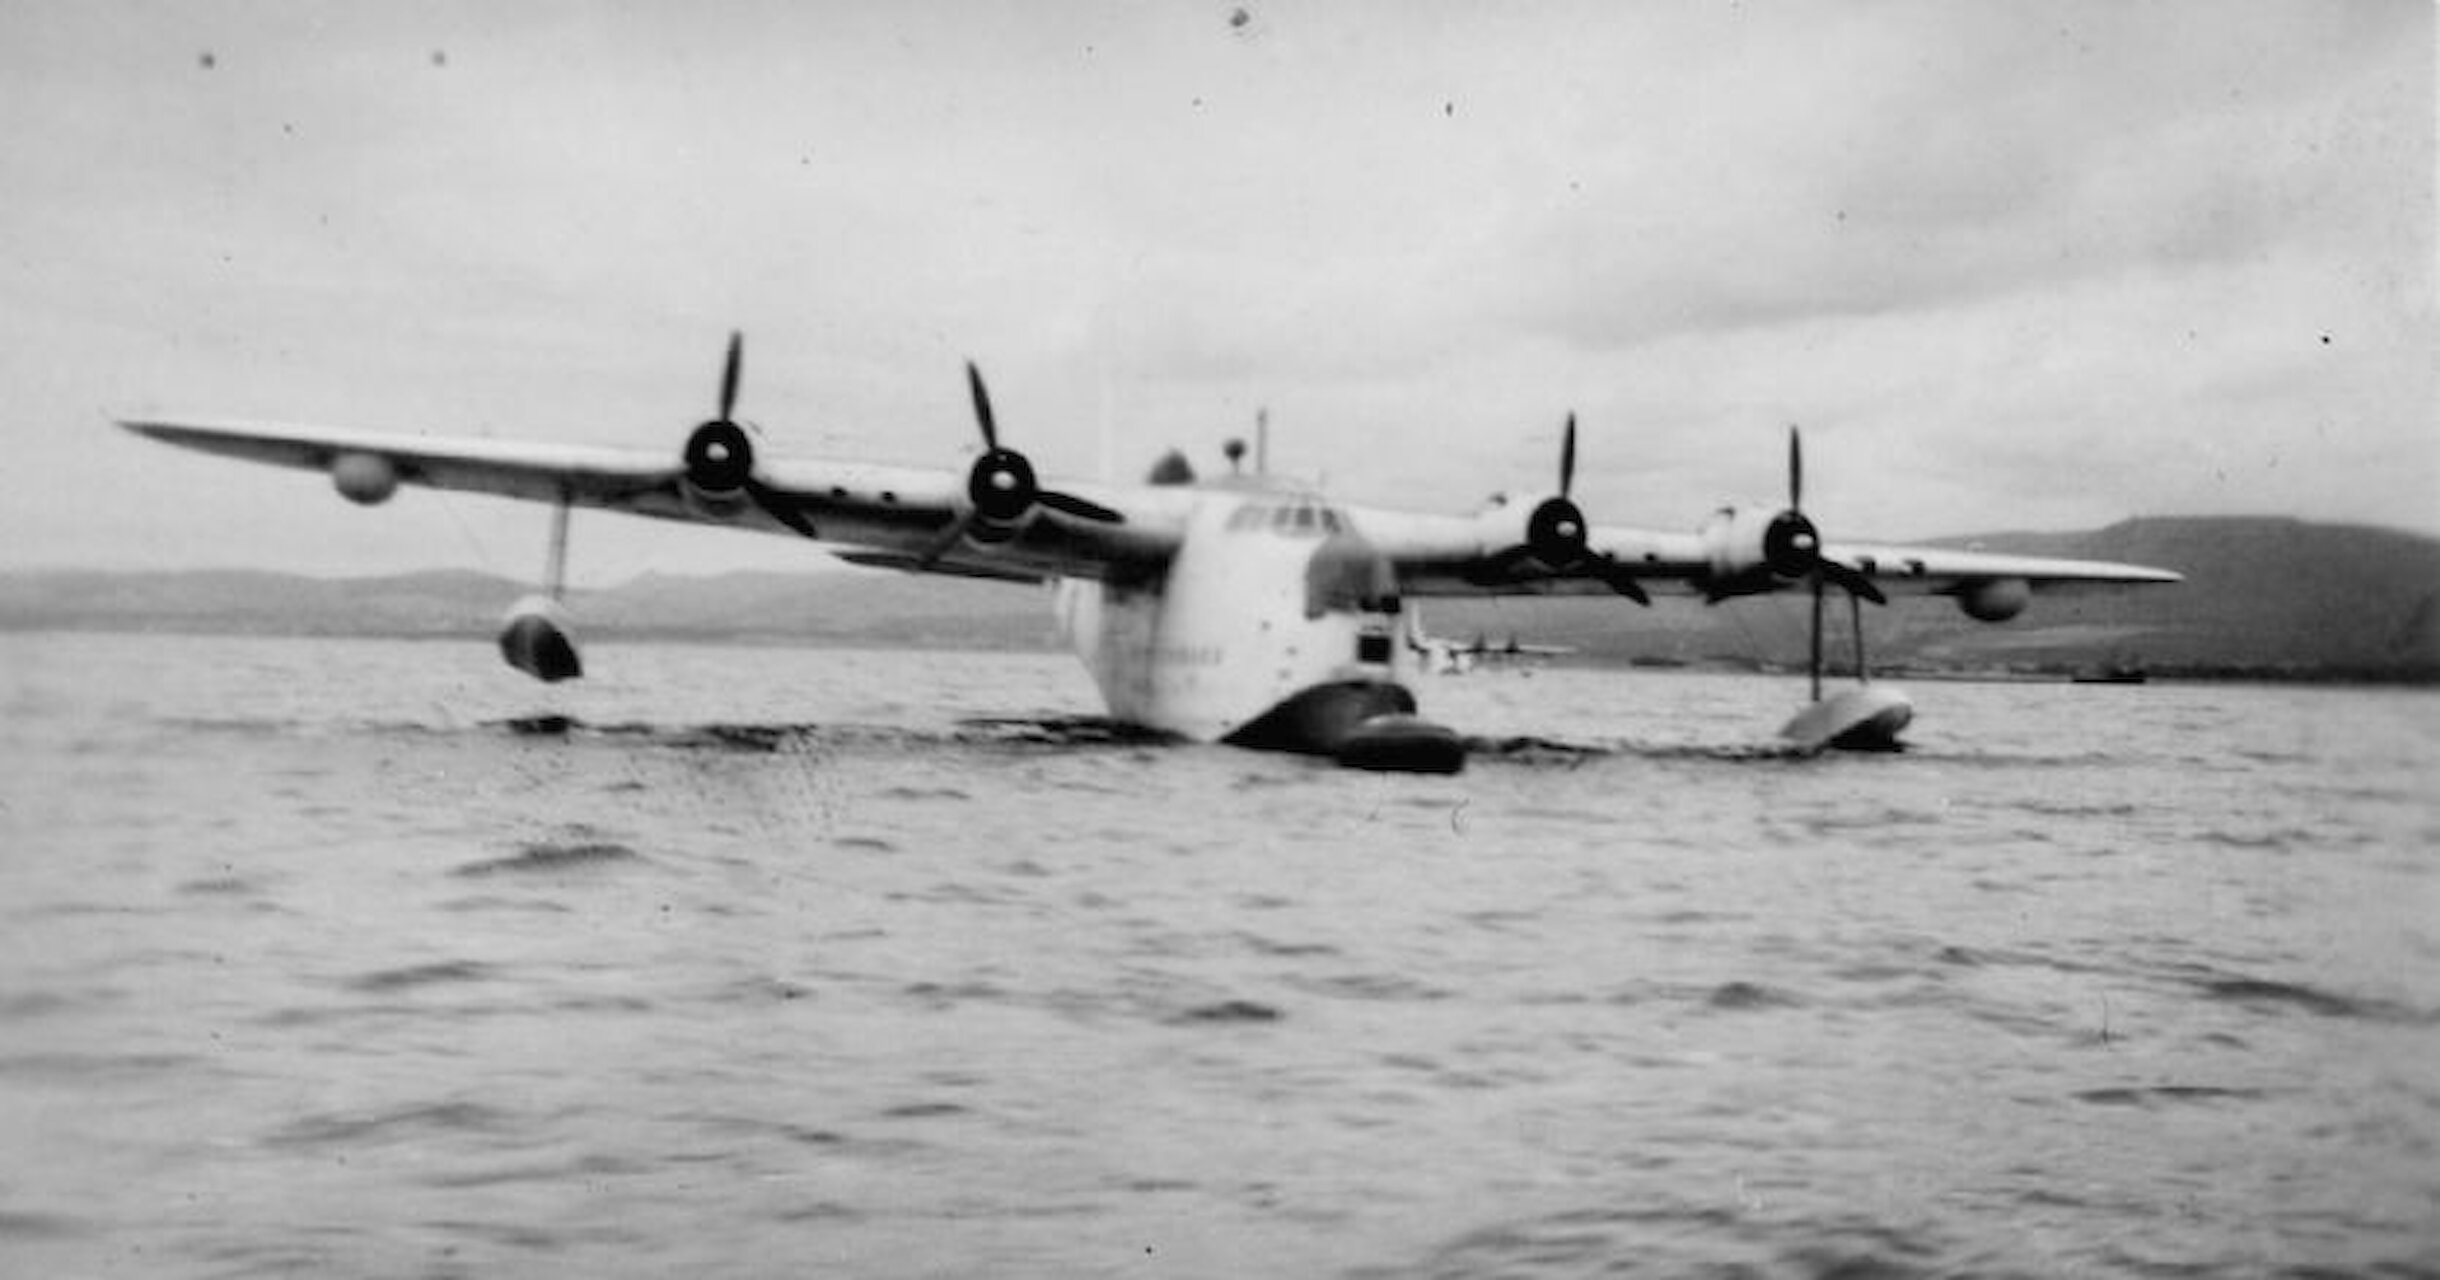 A Sunderland flying boat at RAF Alness